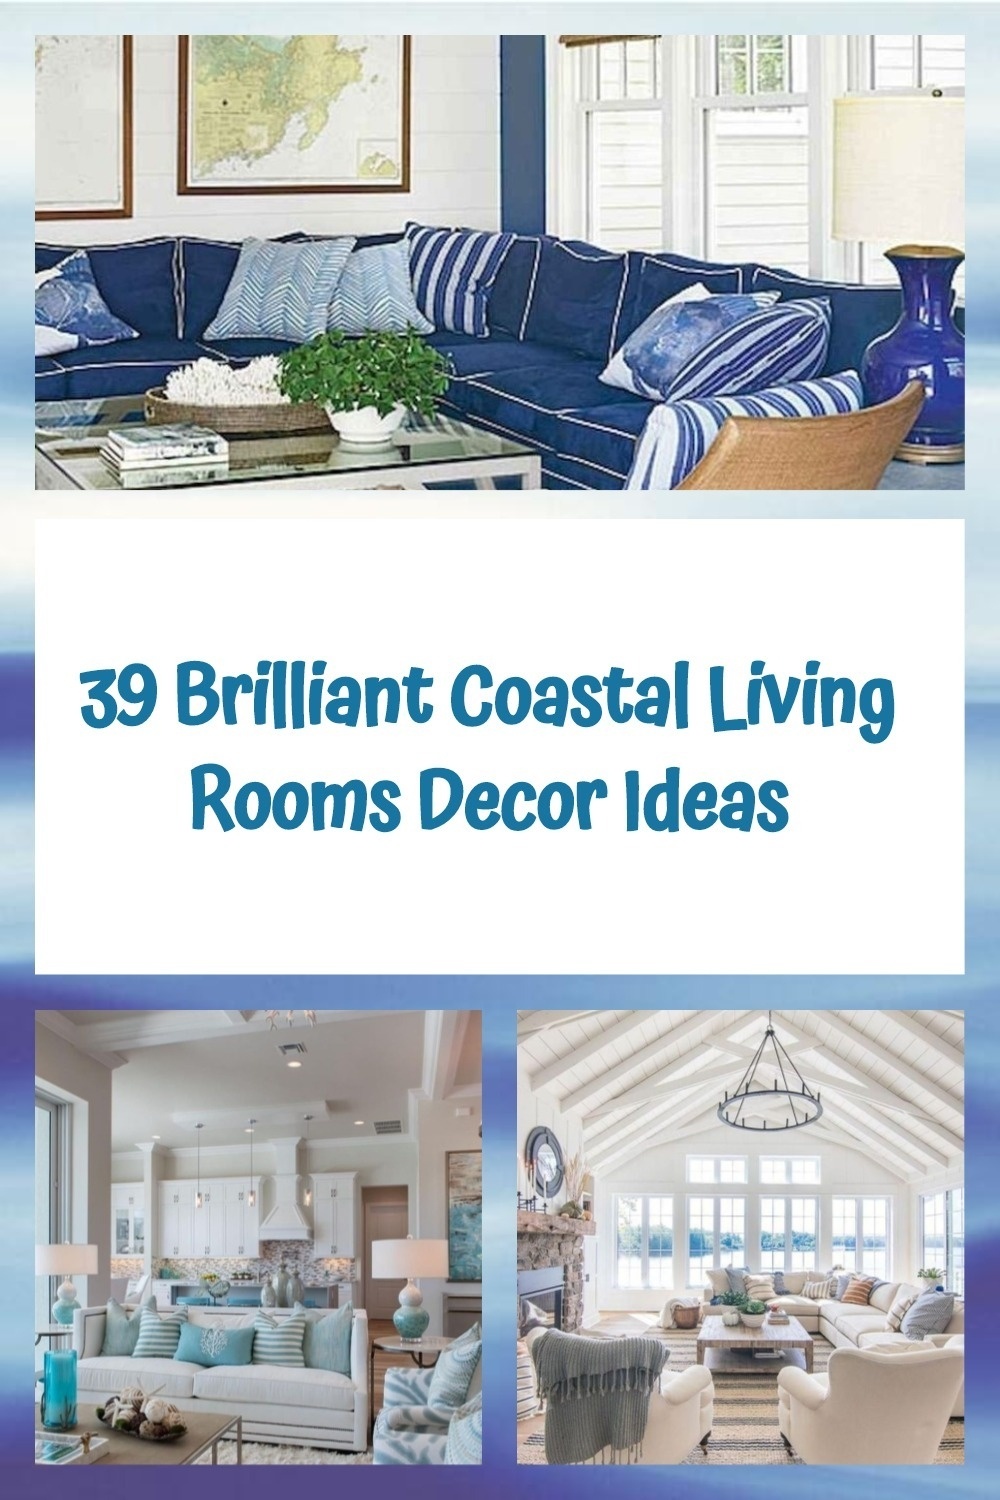 39 Brilliant Coastal Living Rooms Decor Ideas